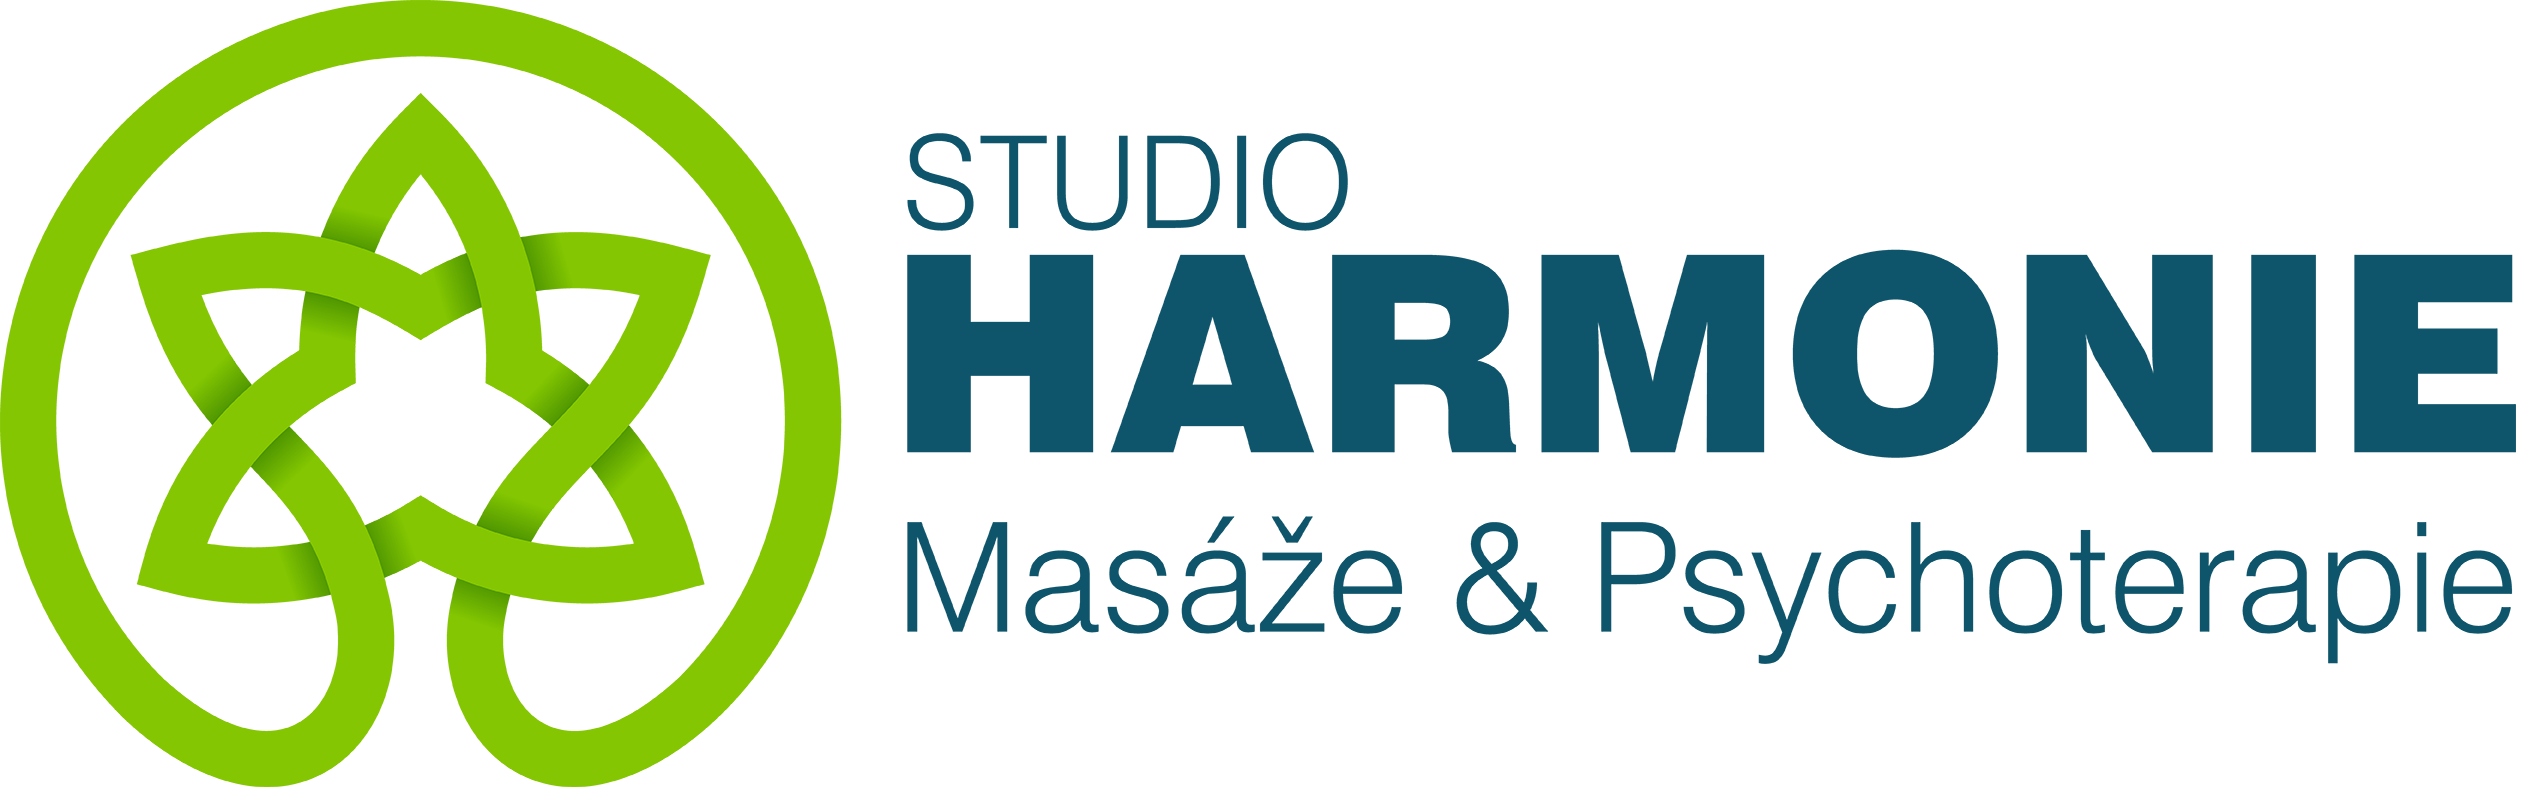 studio_harmonie_banner